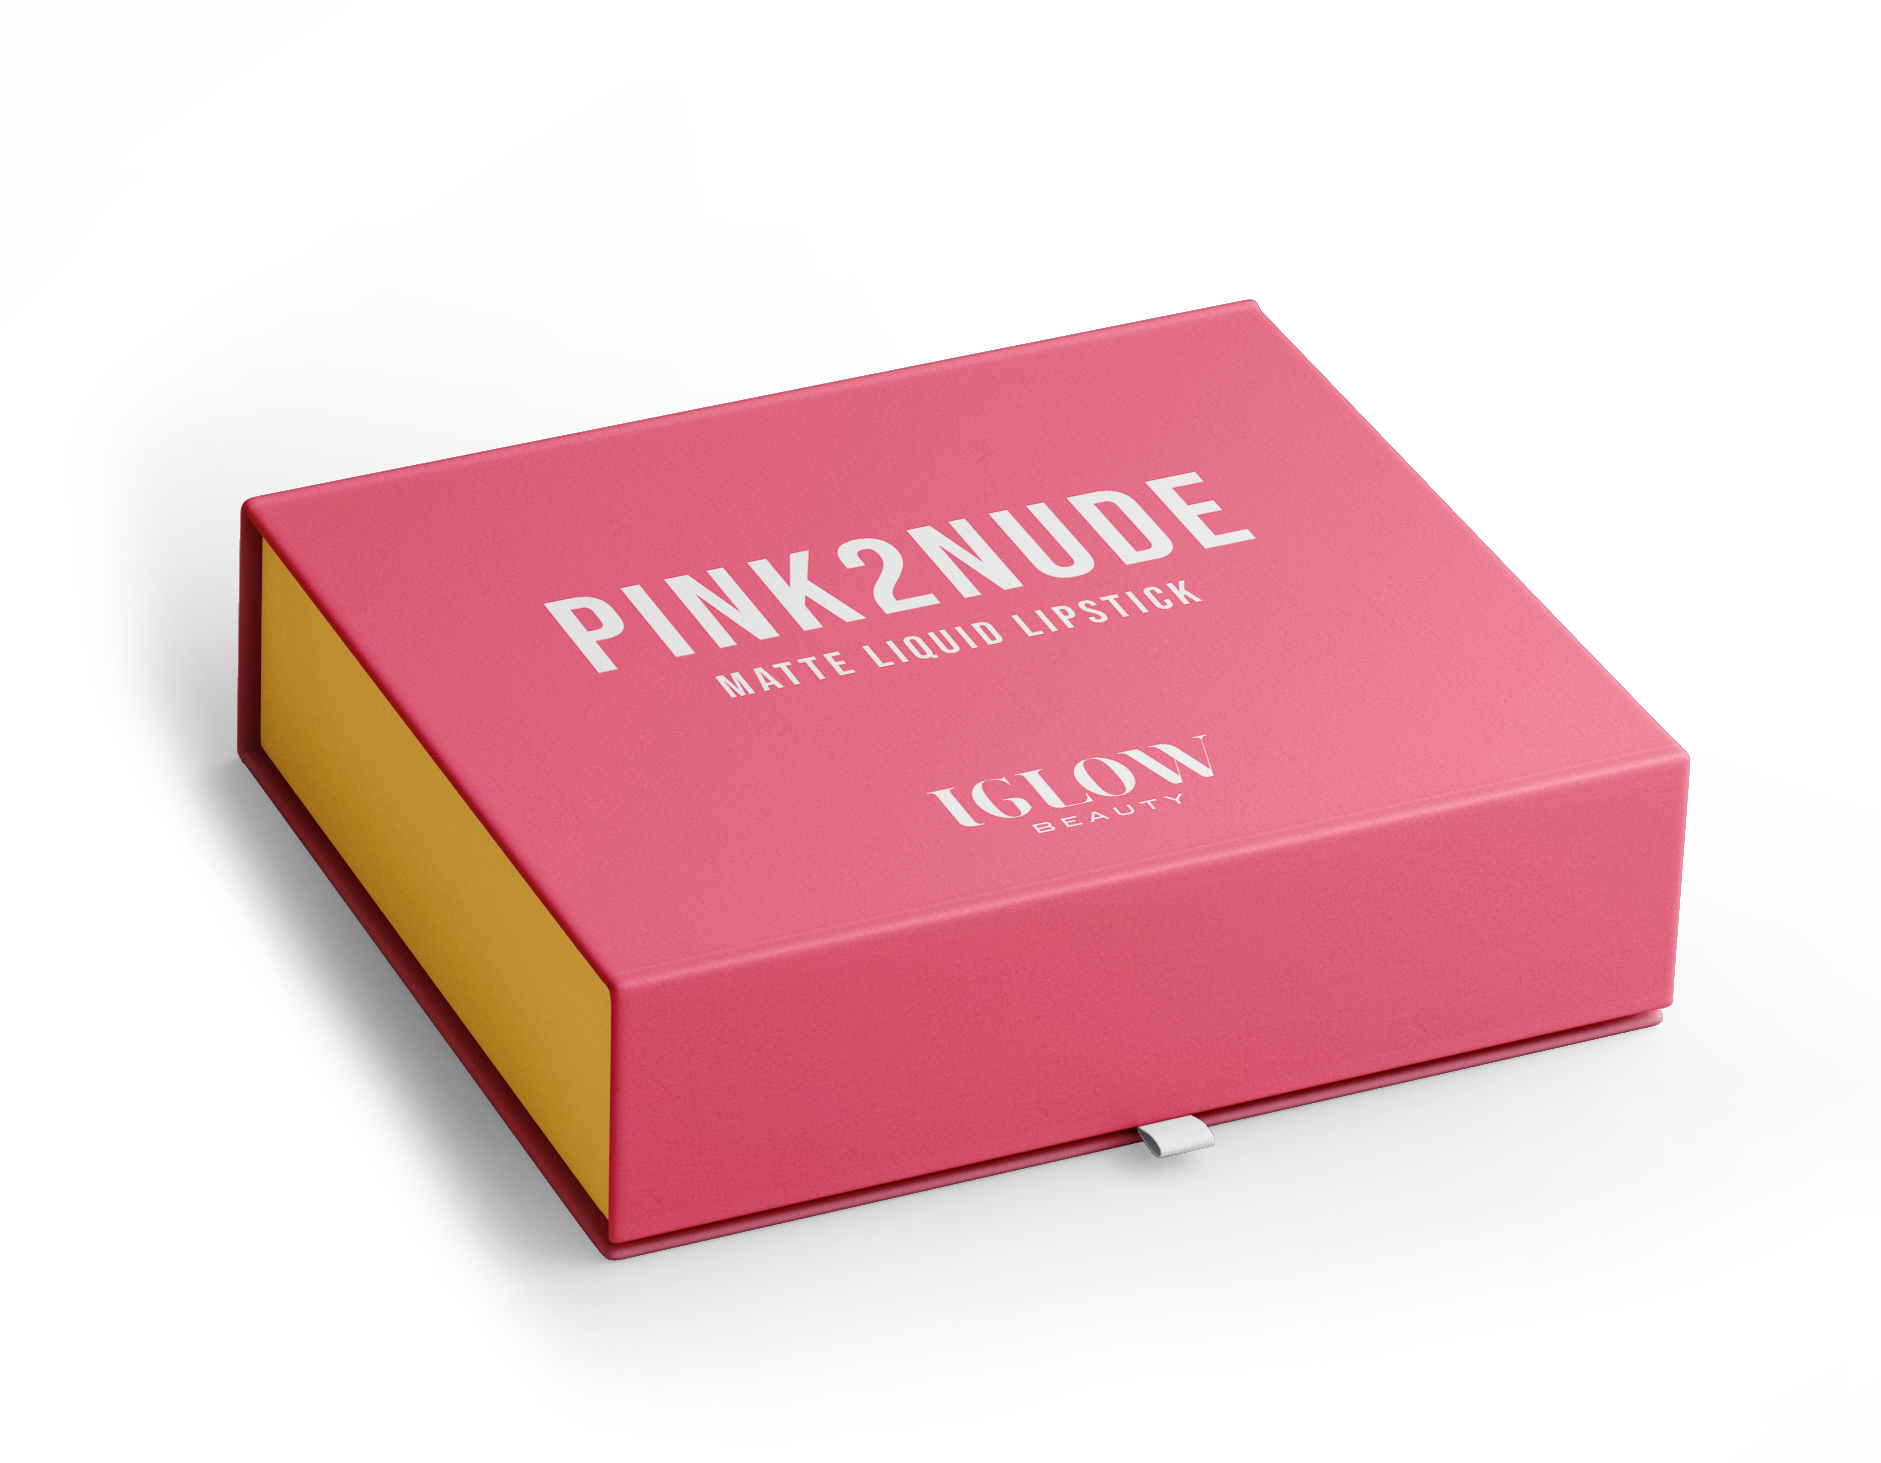 IGLOW Beauty Pink2Nude Lipstick Kit